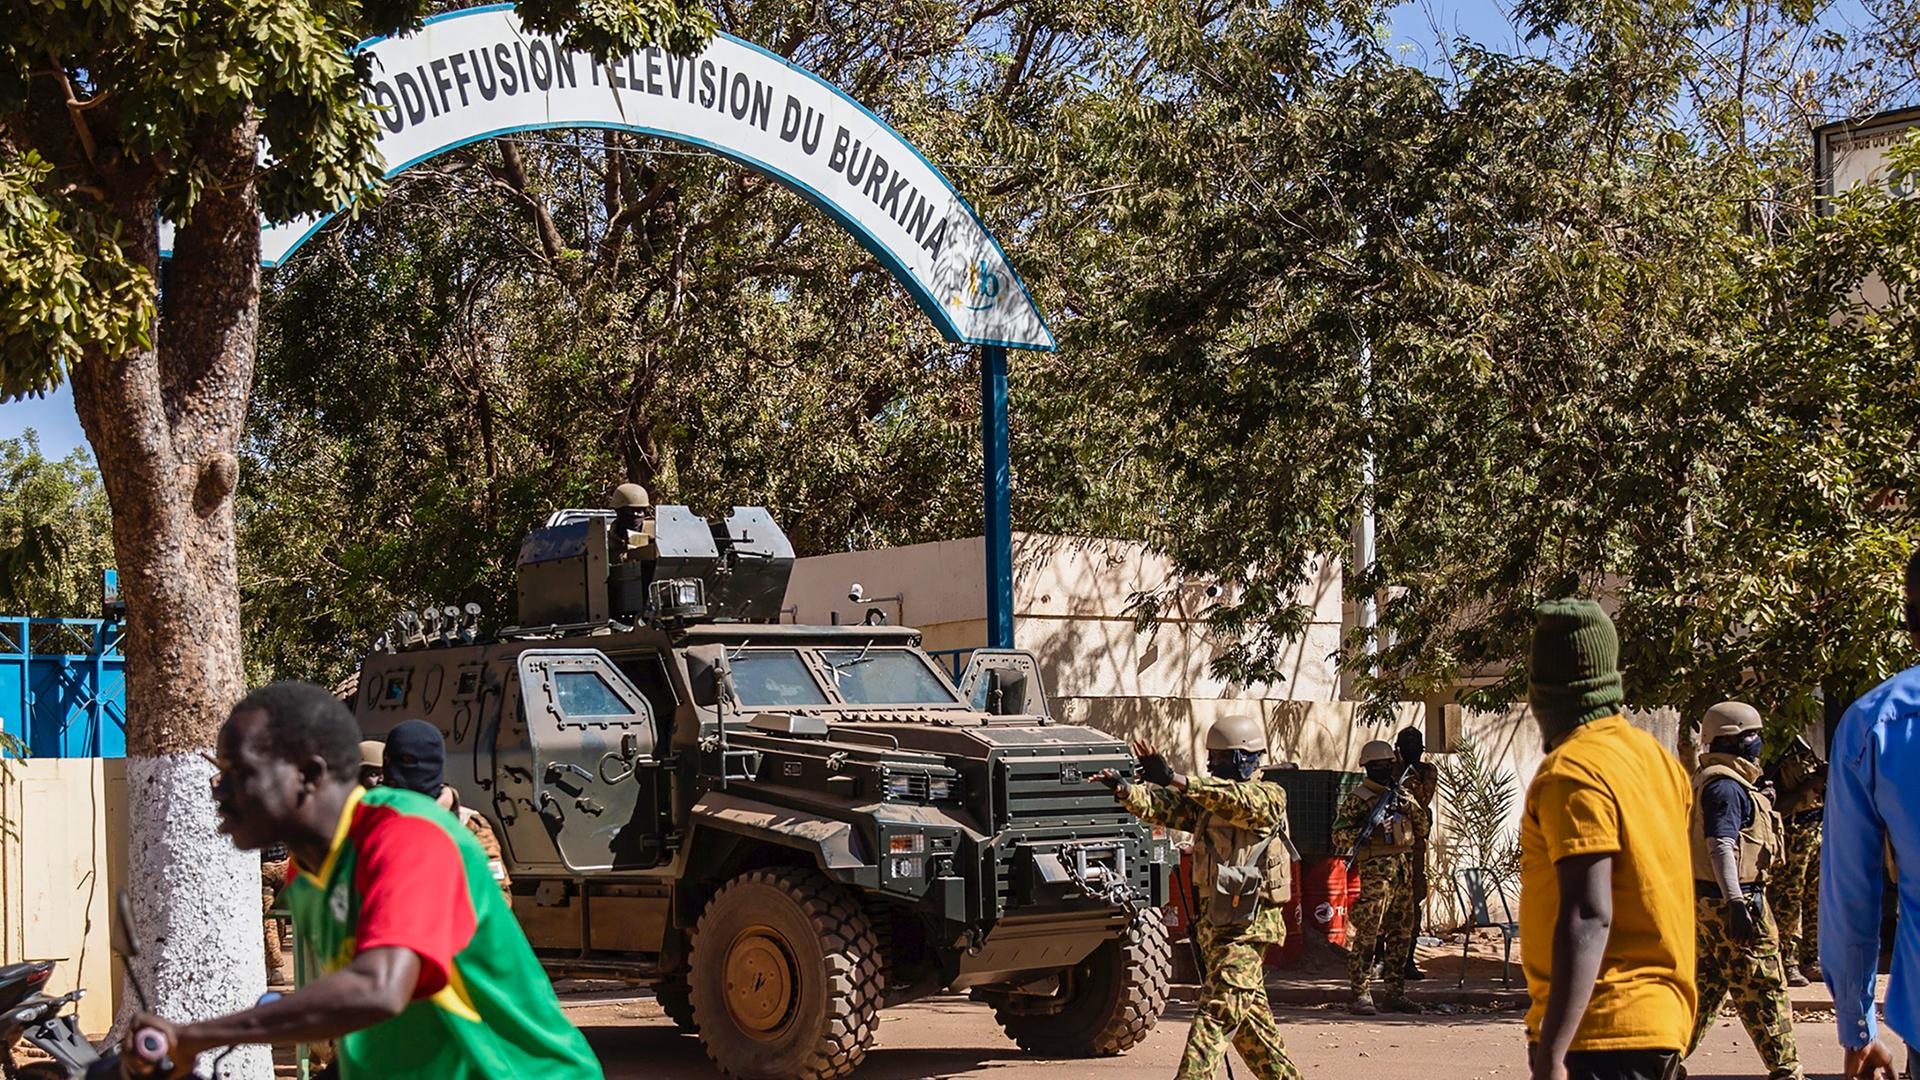 Soldaten in einem Militärfahrzeug stehen vor dem Eingang einer TV-Station in Ouagadougou, Burkina Faso.